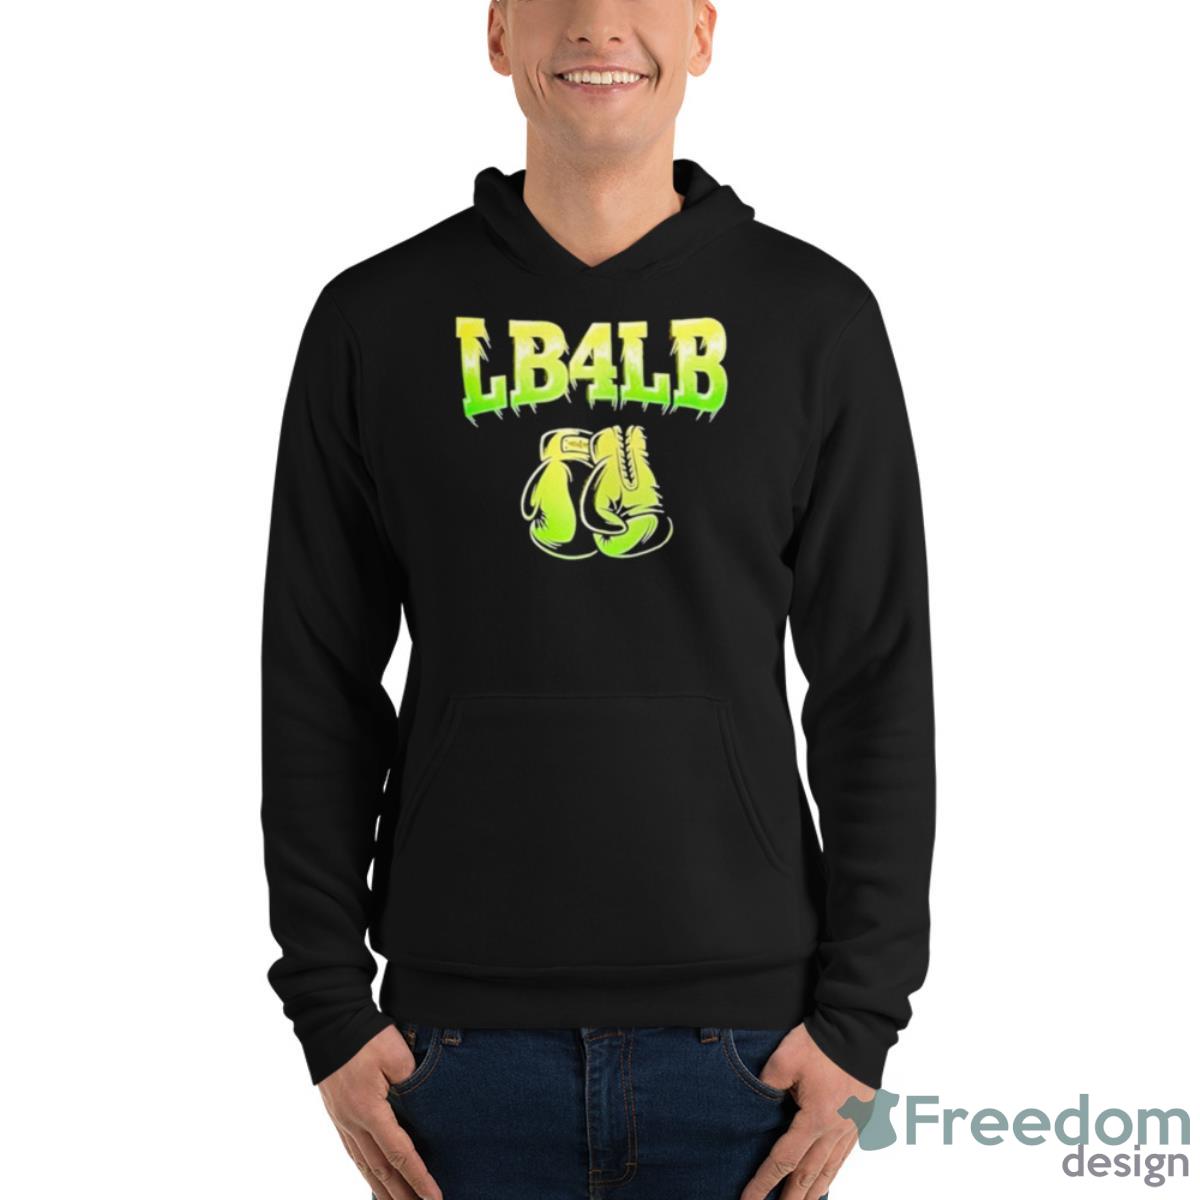 Lb4lb Shirt